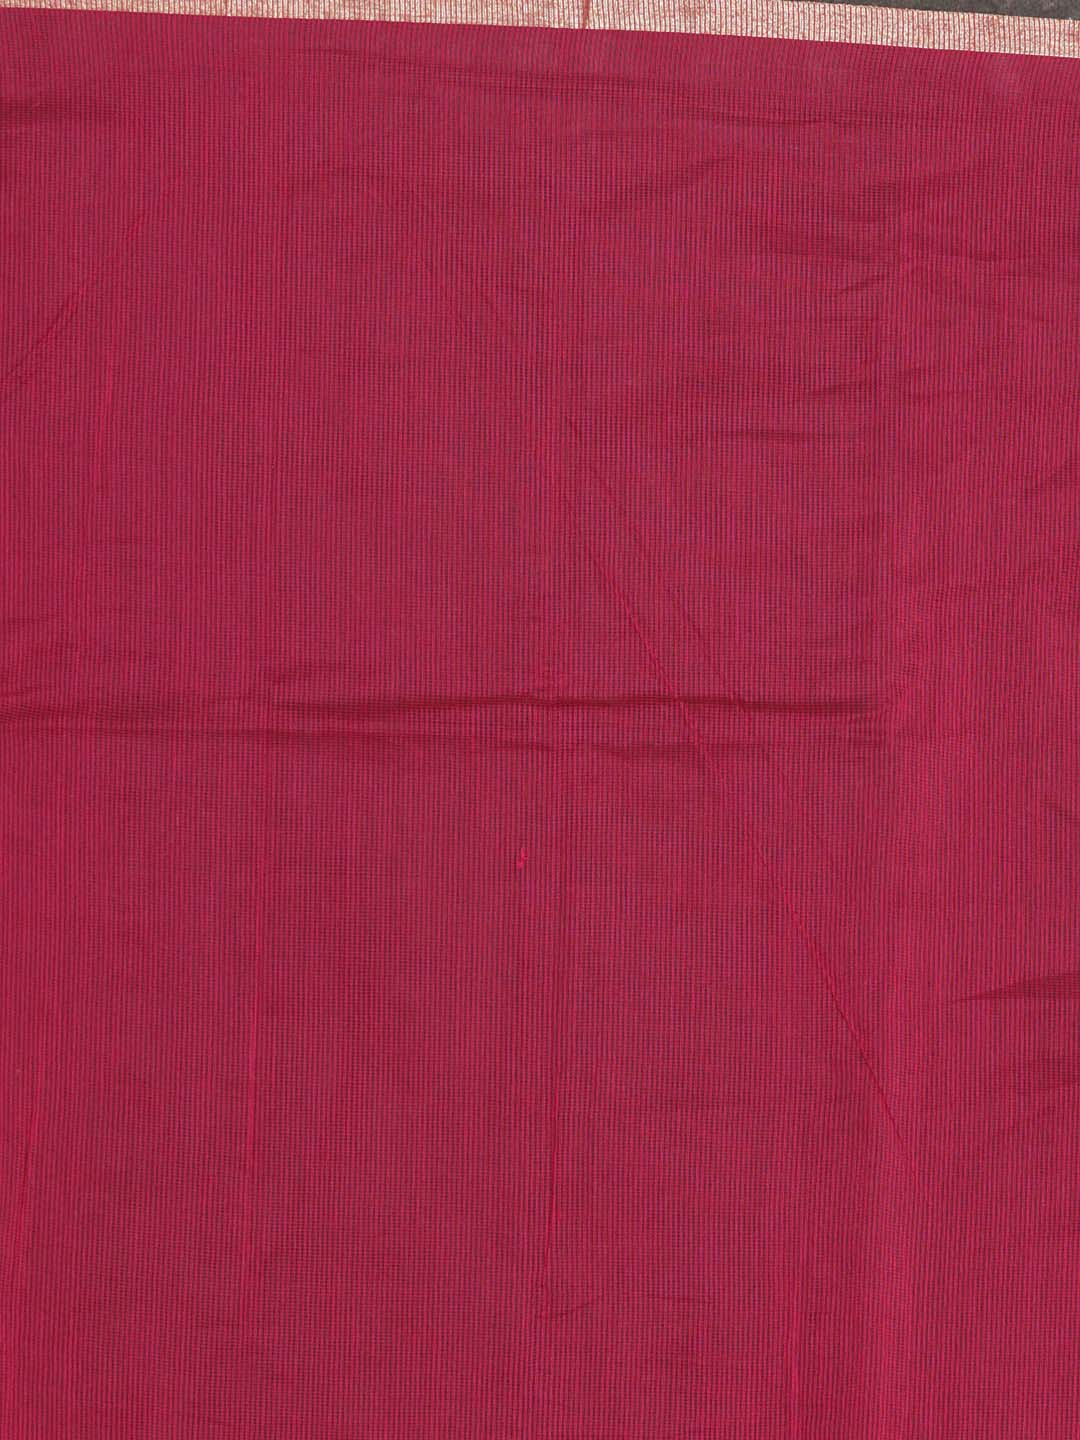 Indethnic Banarasi Magenta Solid Daily Wear Saree - Saree Detail View